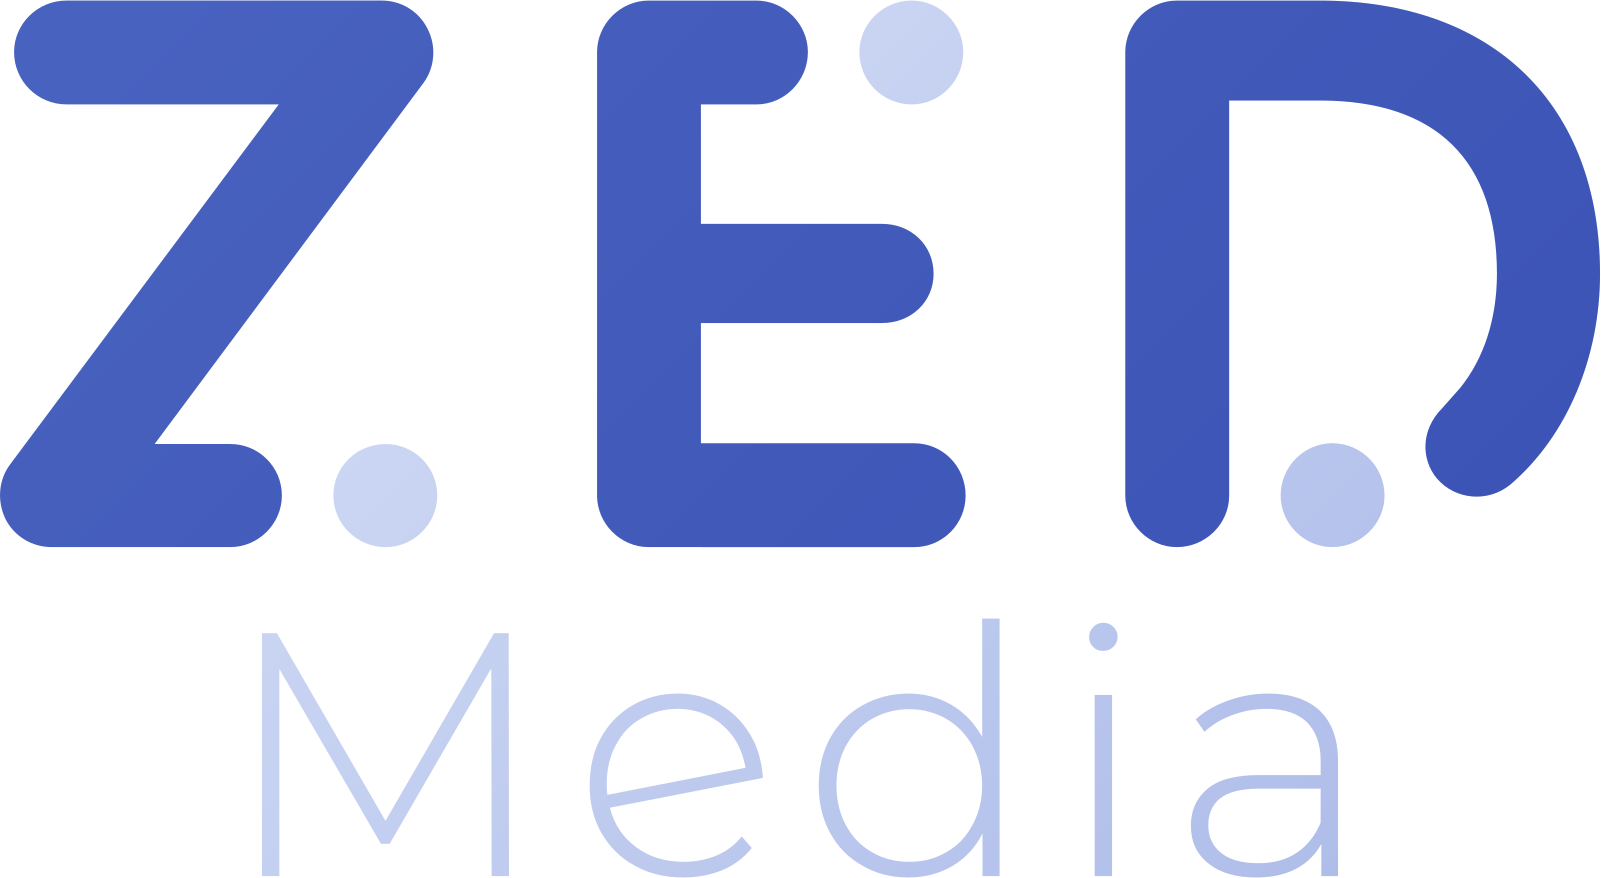 Zed Media